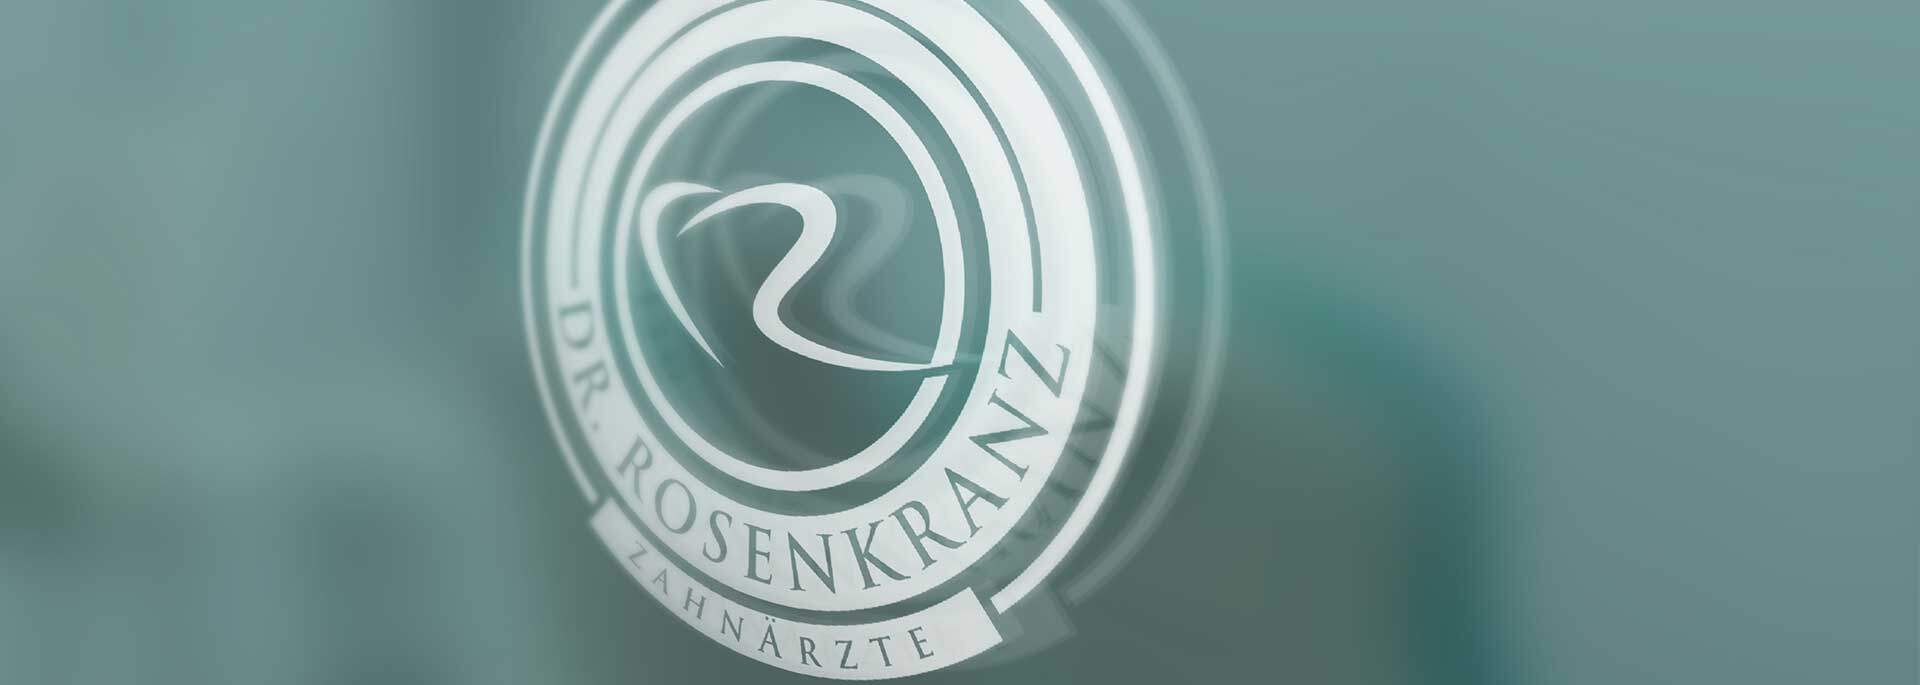 Logo auf Praxisschild von Dr. Rosenkranz